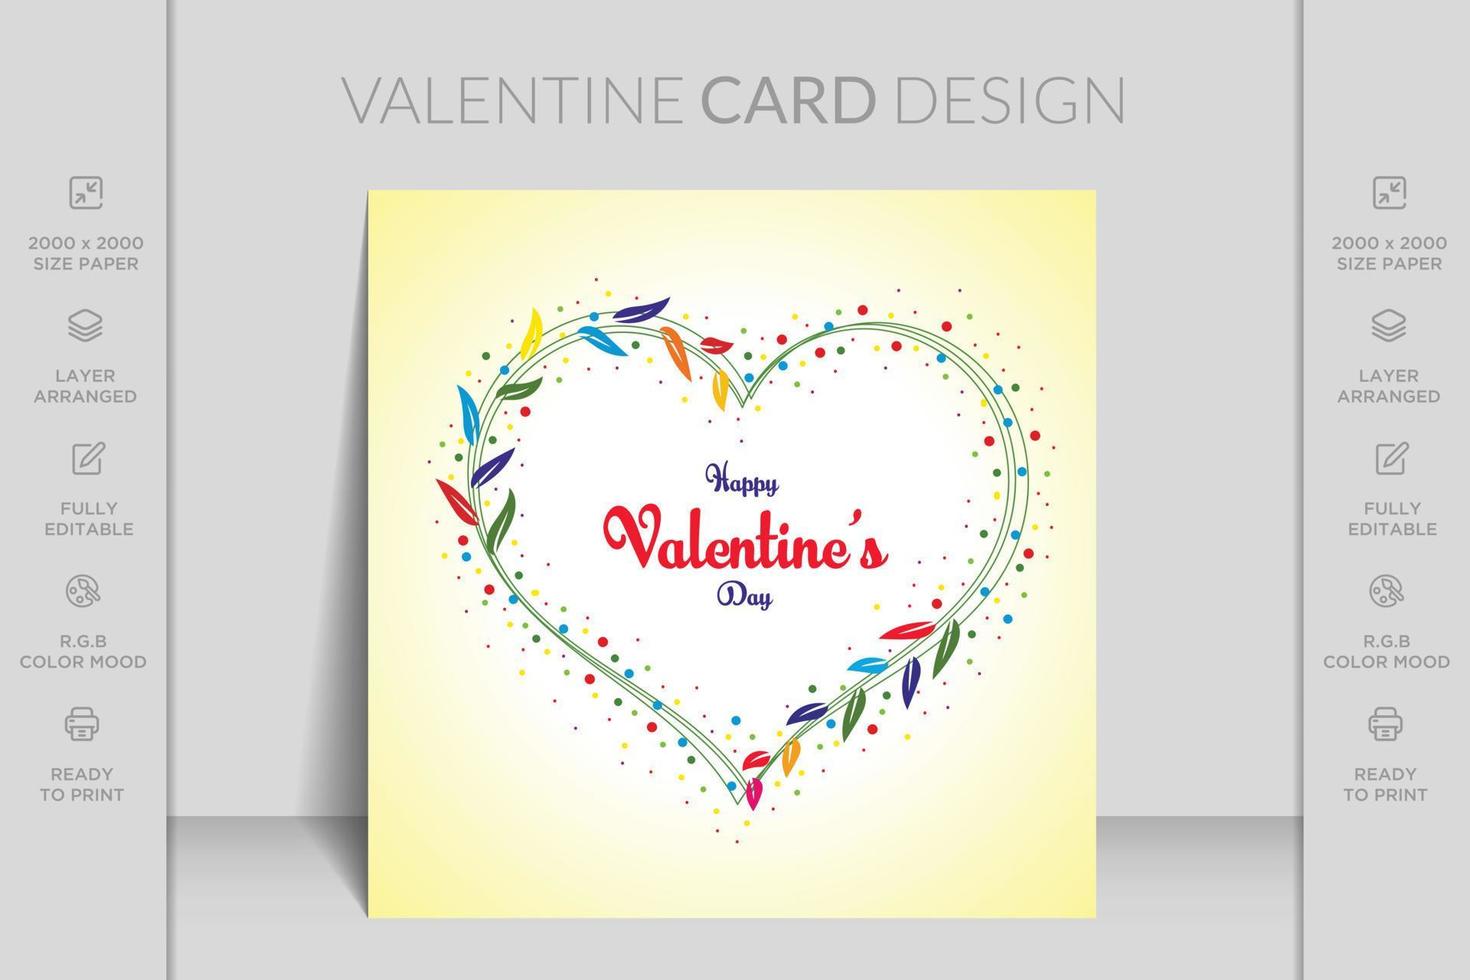 Happy Valentines Day Romantik-Grußkarte. perfekt für aufkleber, geburtstag, save the date einladung. romantische und niedliche elemente und schöne typografie. tapete, flyer, einladung, broschüre, banner vektor